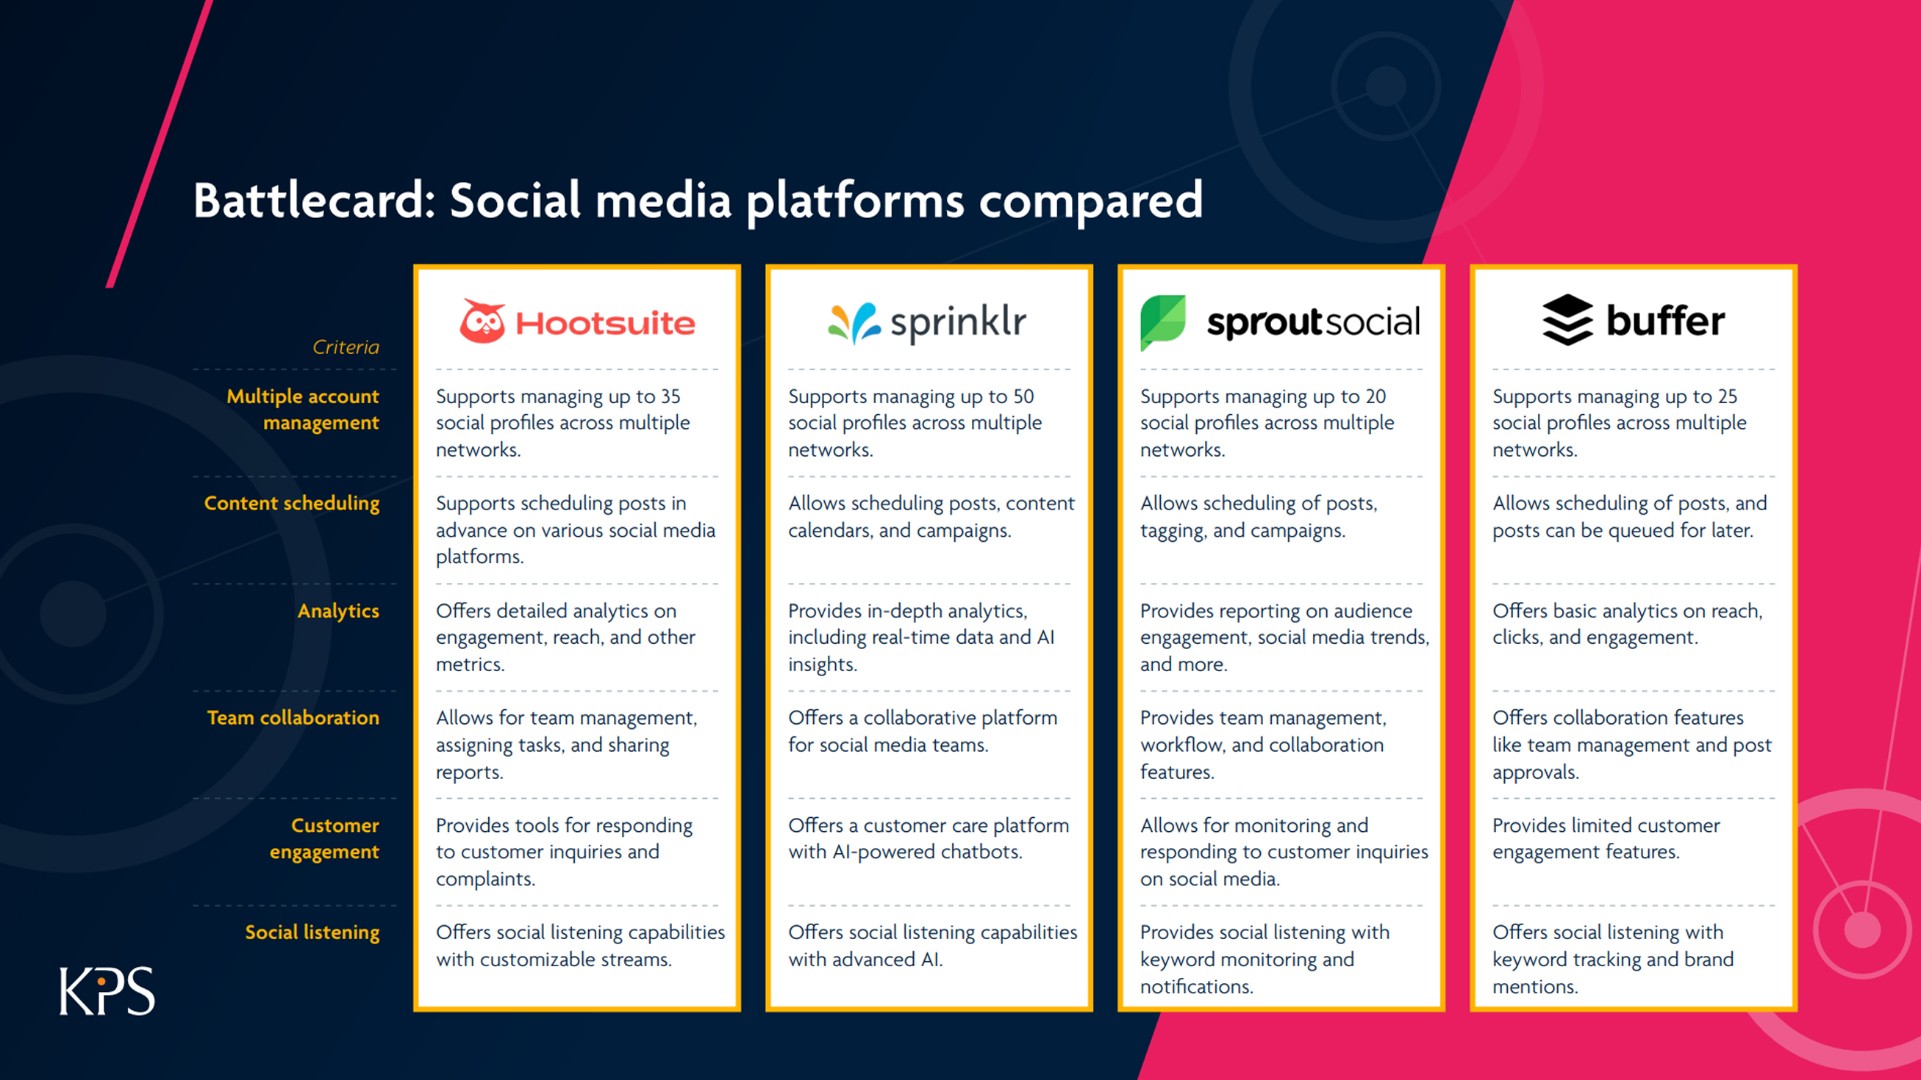 KPS Strategy Battlecard: Social Media Platforms